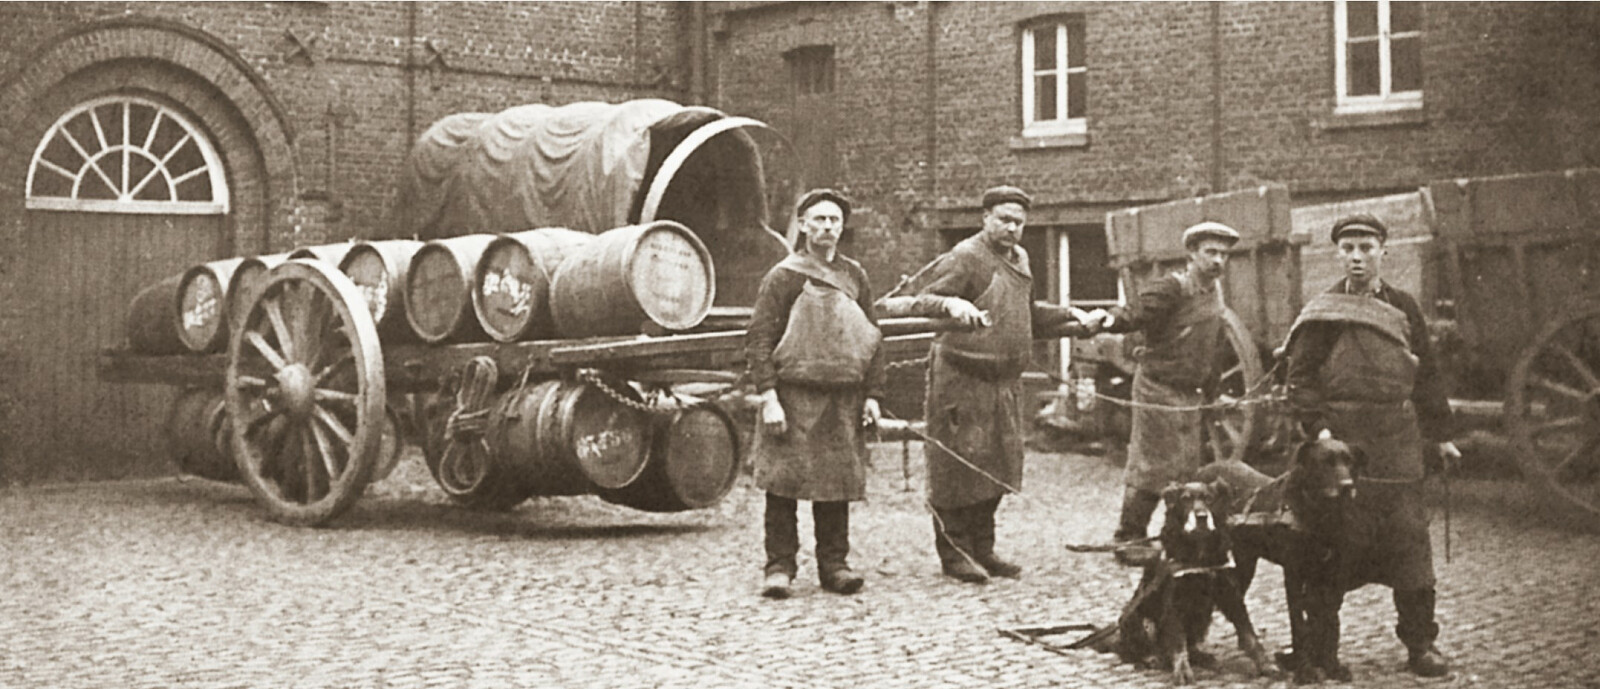 De fire brødrene Rodenbach startet bryggeriet i 1821.